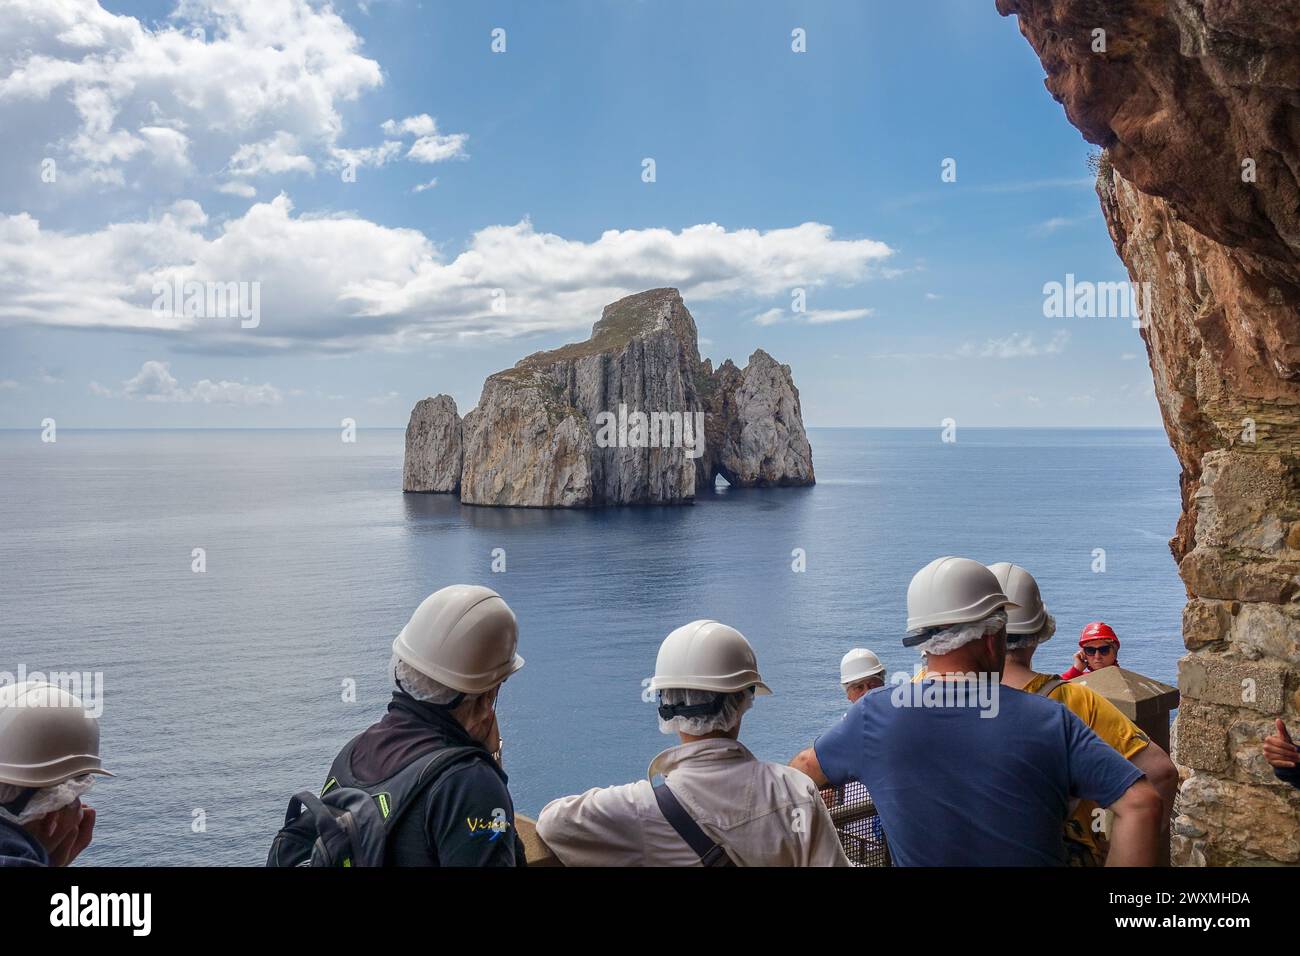 Gruppe von Touristen mit Helmen, die auf eine ferne Felsformation (Sugarloaf Island) im Meer von Porto Flavia, einer Bergbauanlage auf Sardinien, blicken Stockfoto